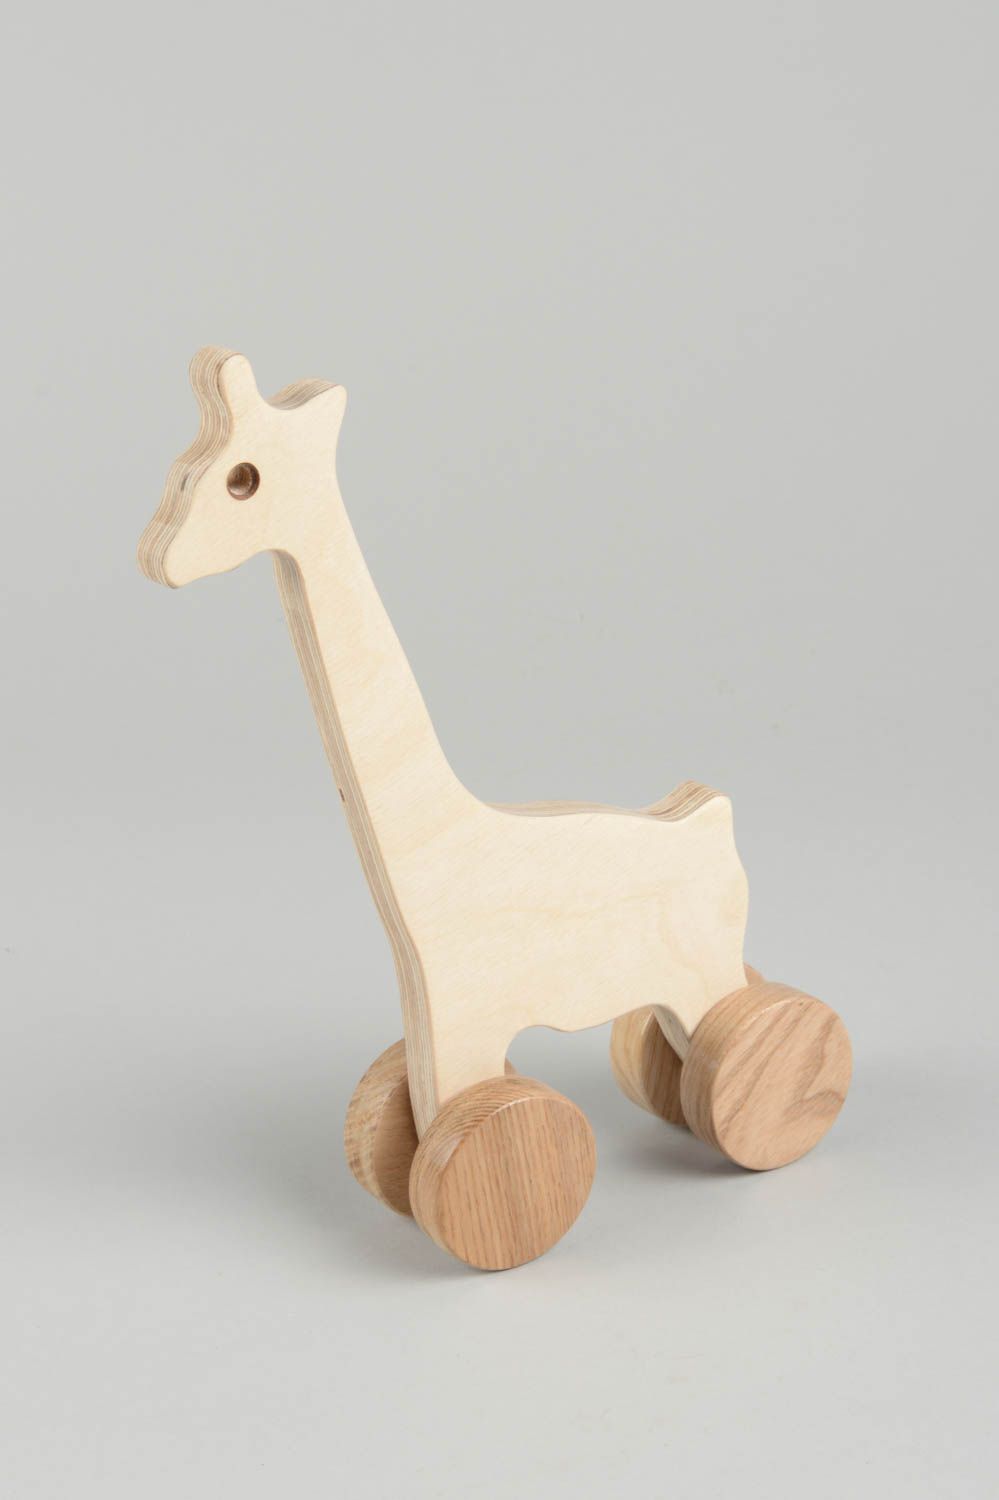 Игрушка ручной работы игрушка из дерева в виде жирафа игрушка каталка небольшая фото 2